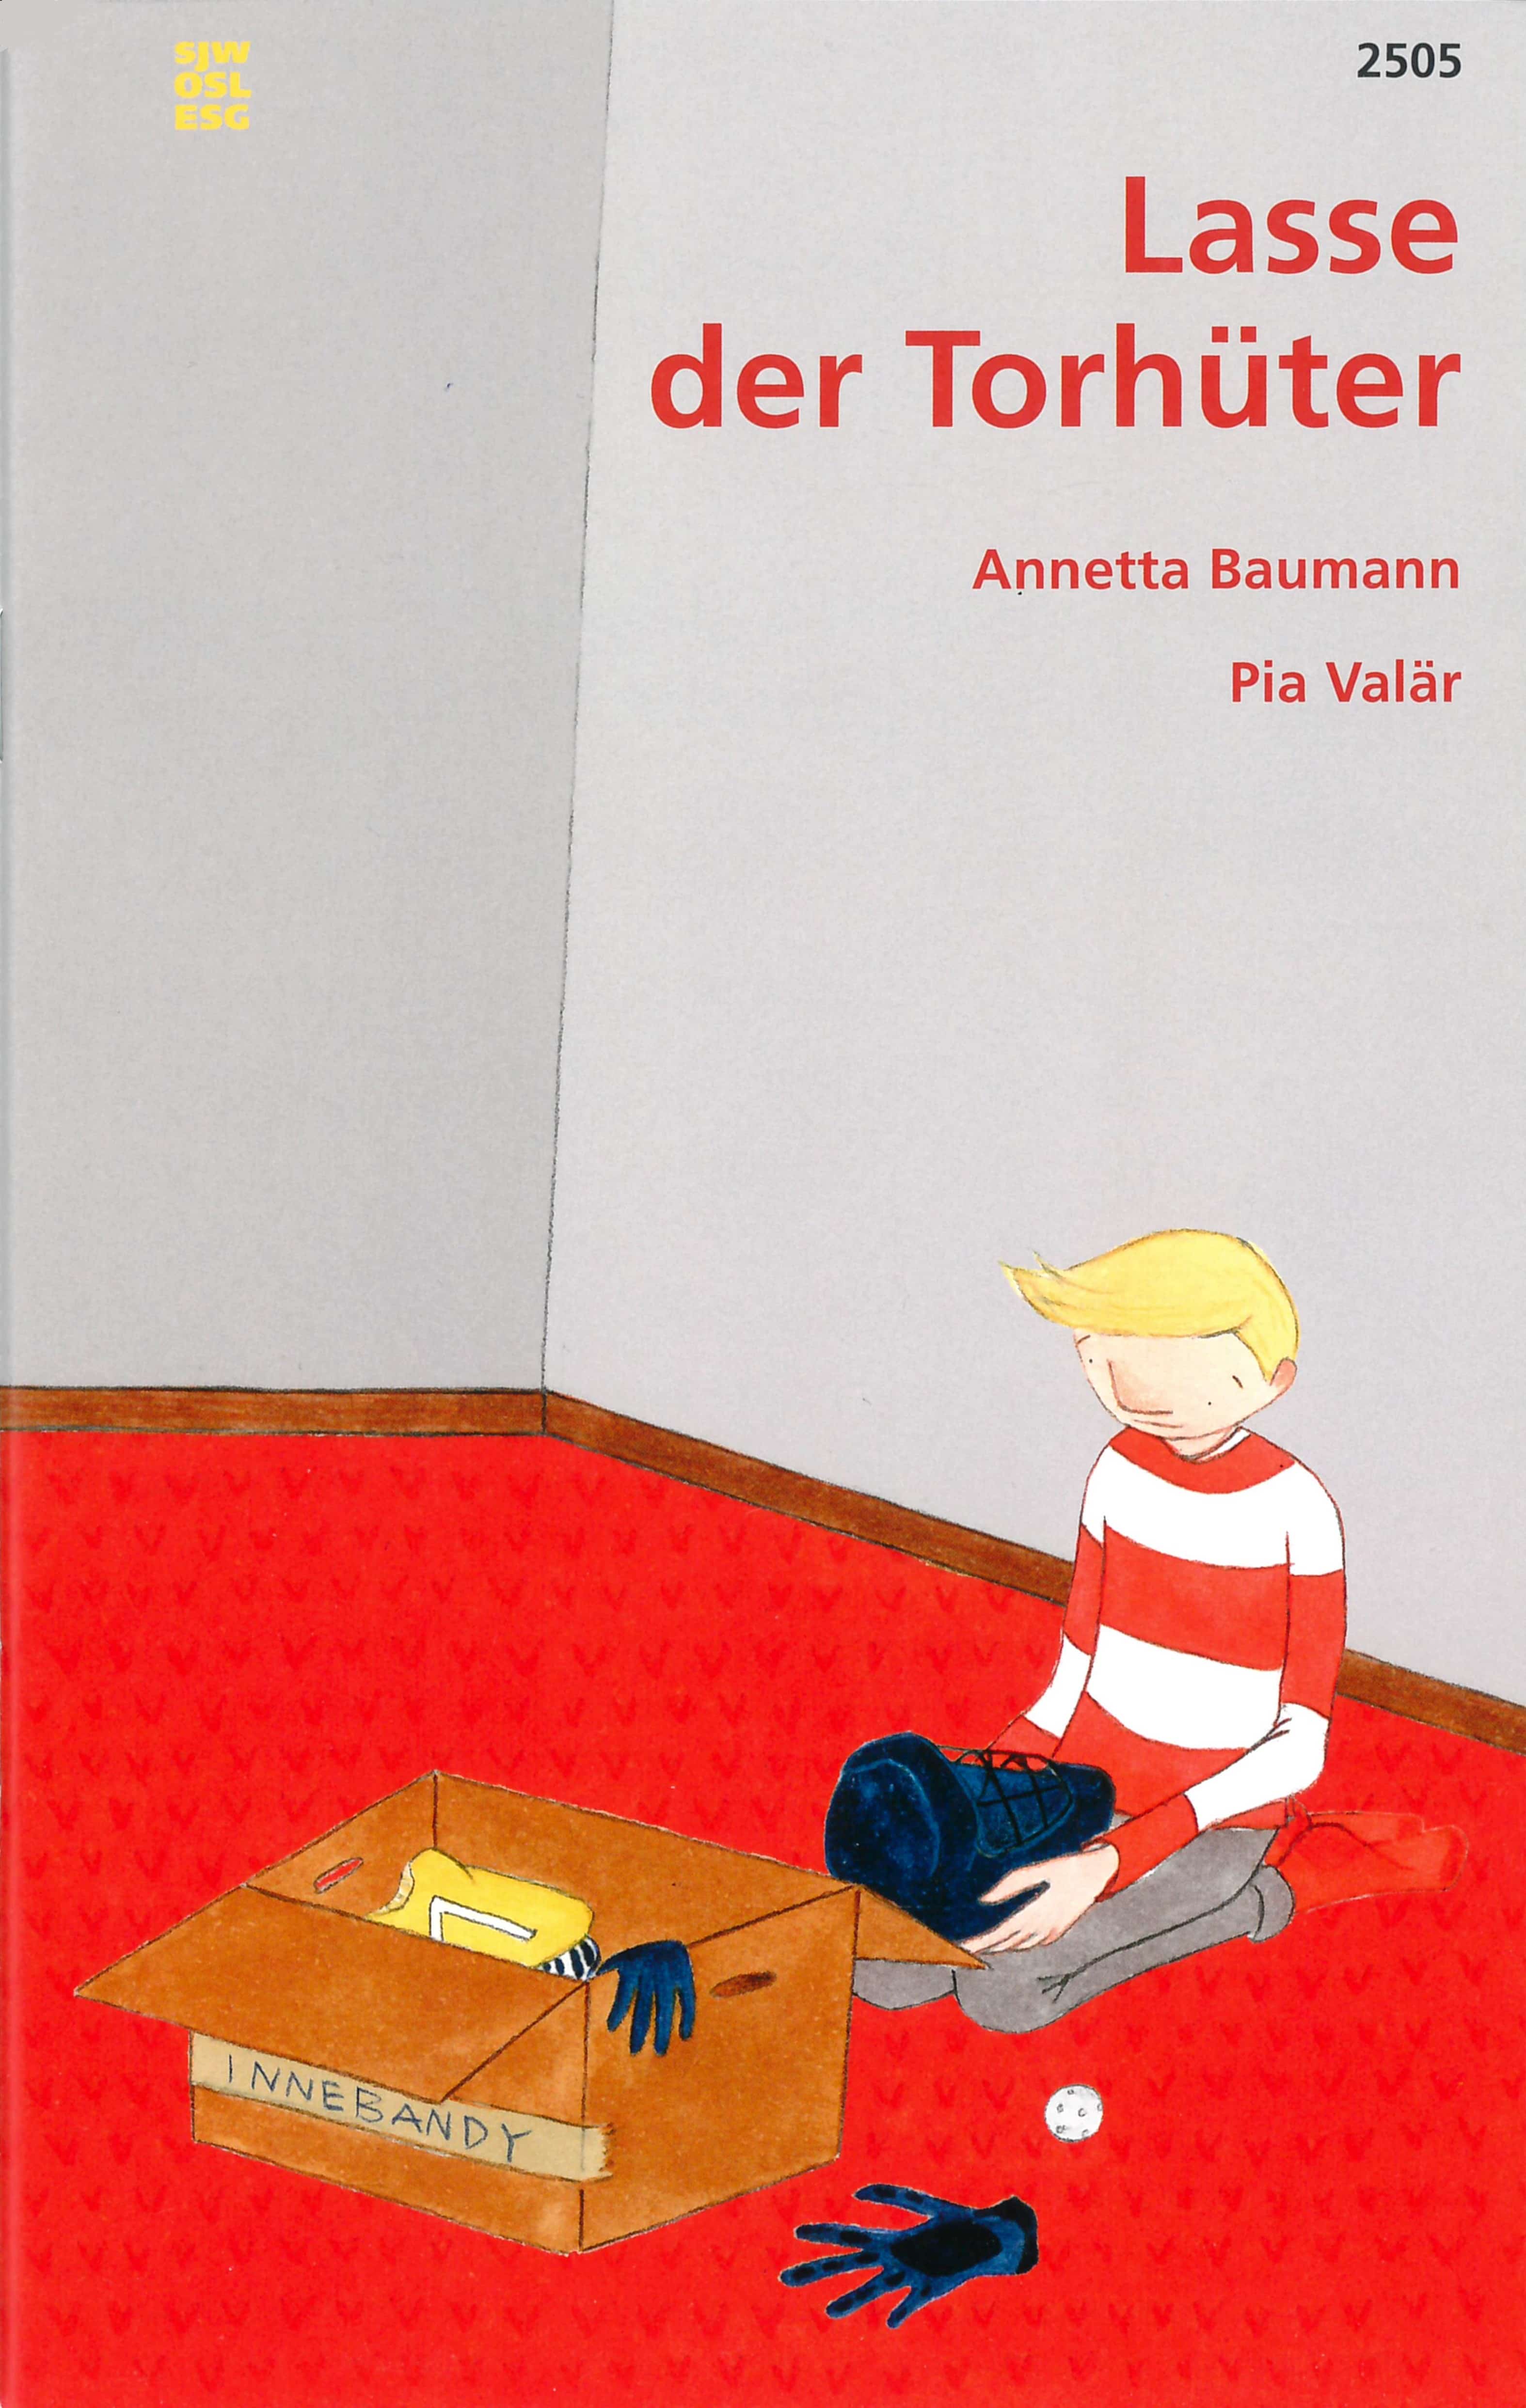 Lasse, der Torhueter, ein Kinderbuch von Annetta Baumann, Illustration von Pia Valaer, SJW Verlag, Weihnachten